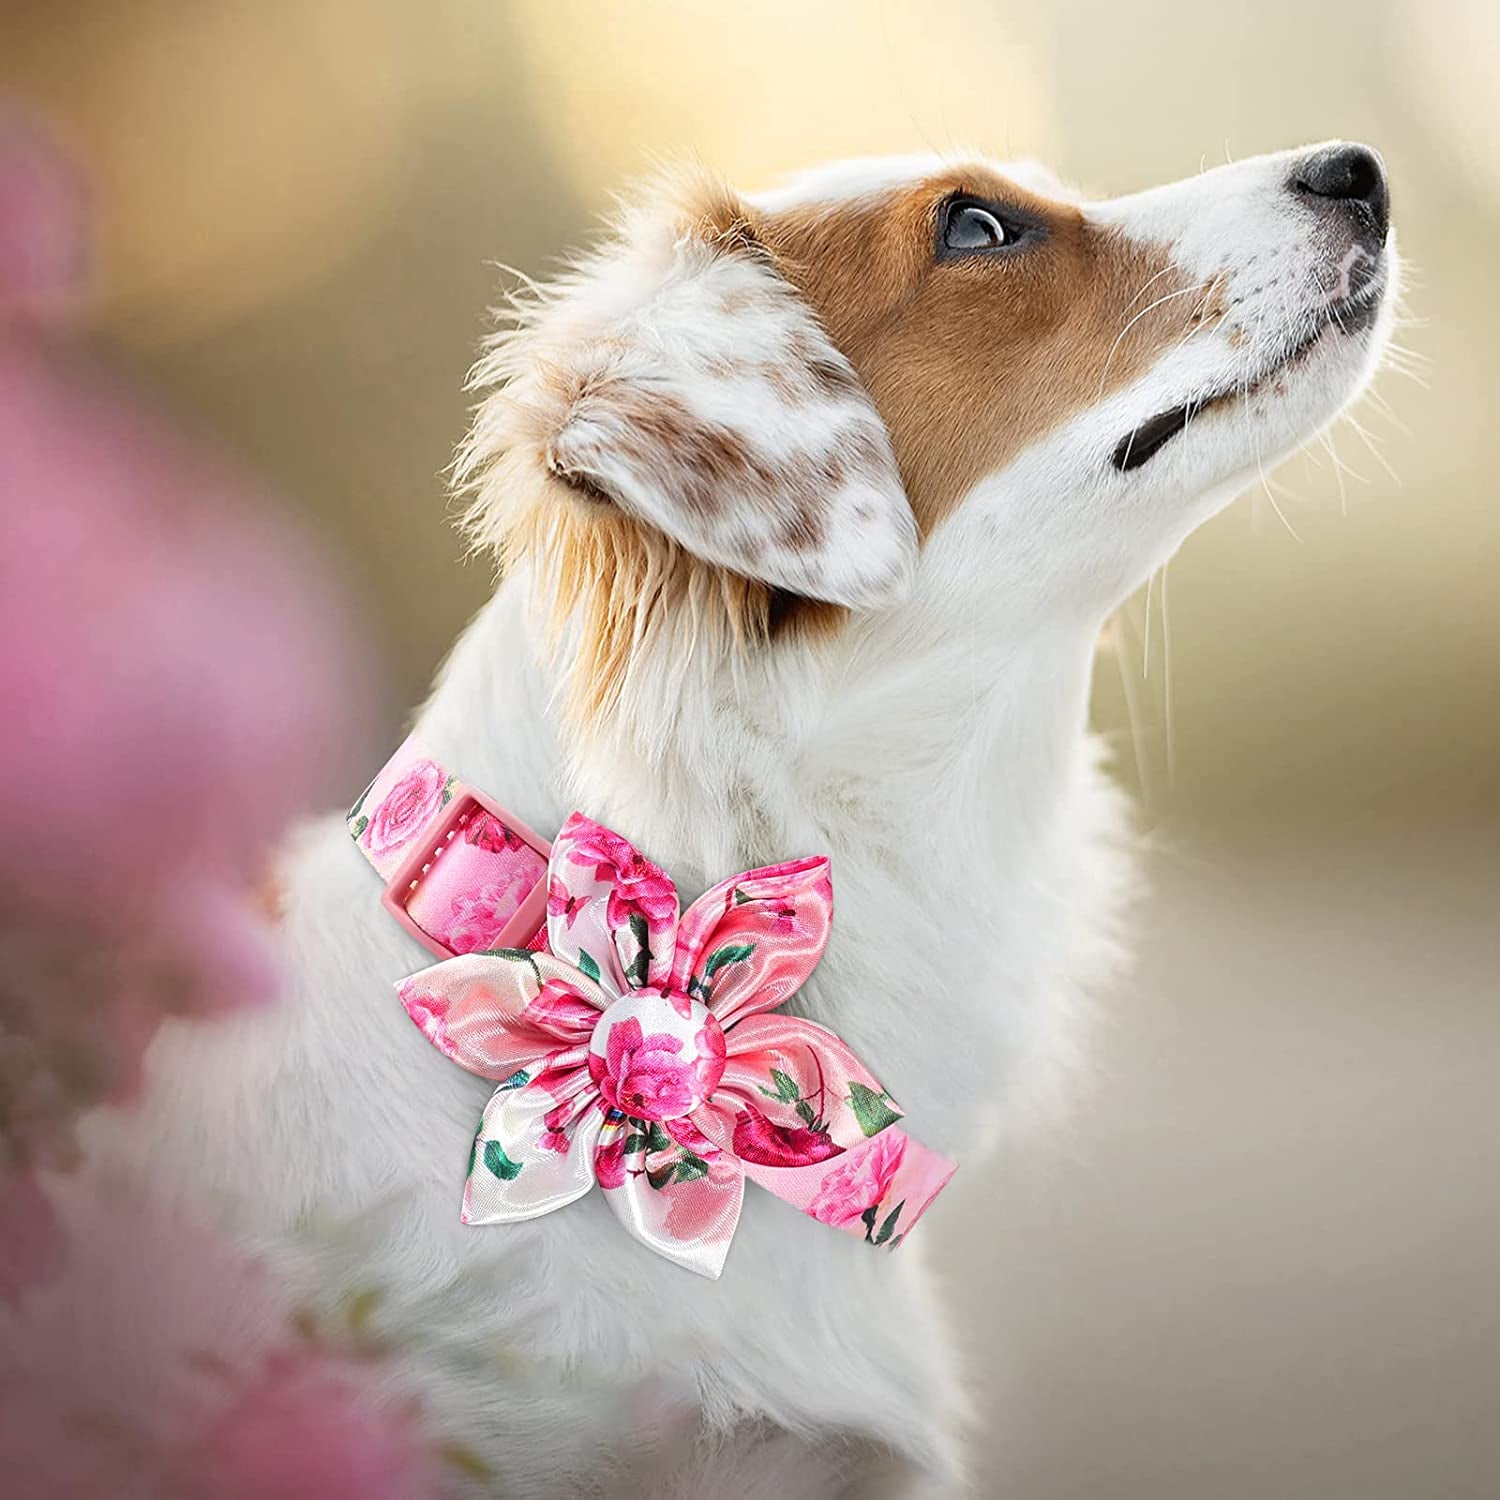 Pink Dog Collar | Girl Dog Collar | Pink Dog Collars | Girl Dog Collars |  Girl Pet Collar | Dog Accessories | Cute Dog Collar